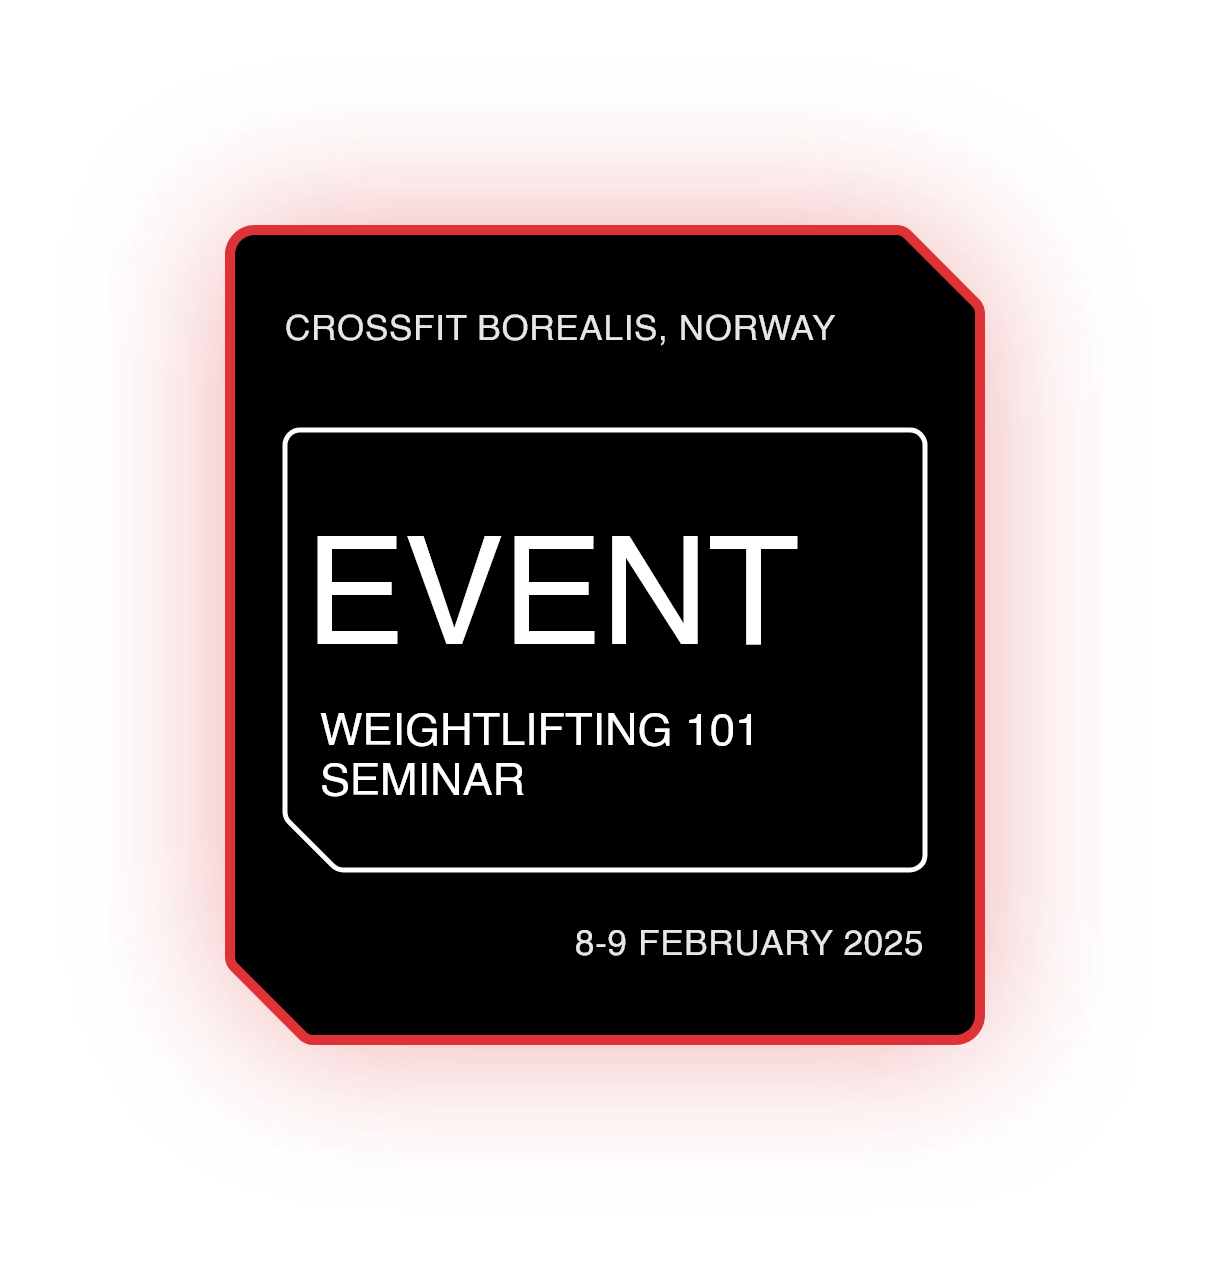 Weightlifting 101 Seminar - Bodø, Norway